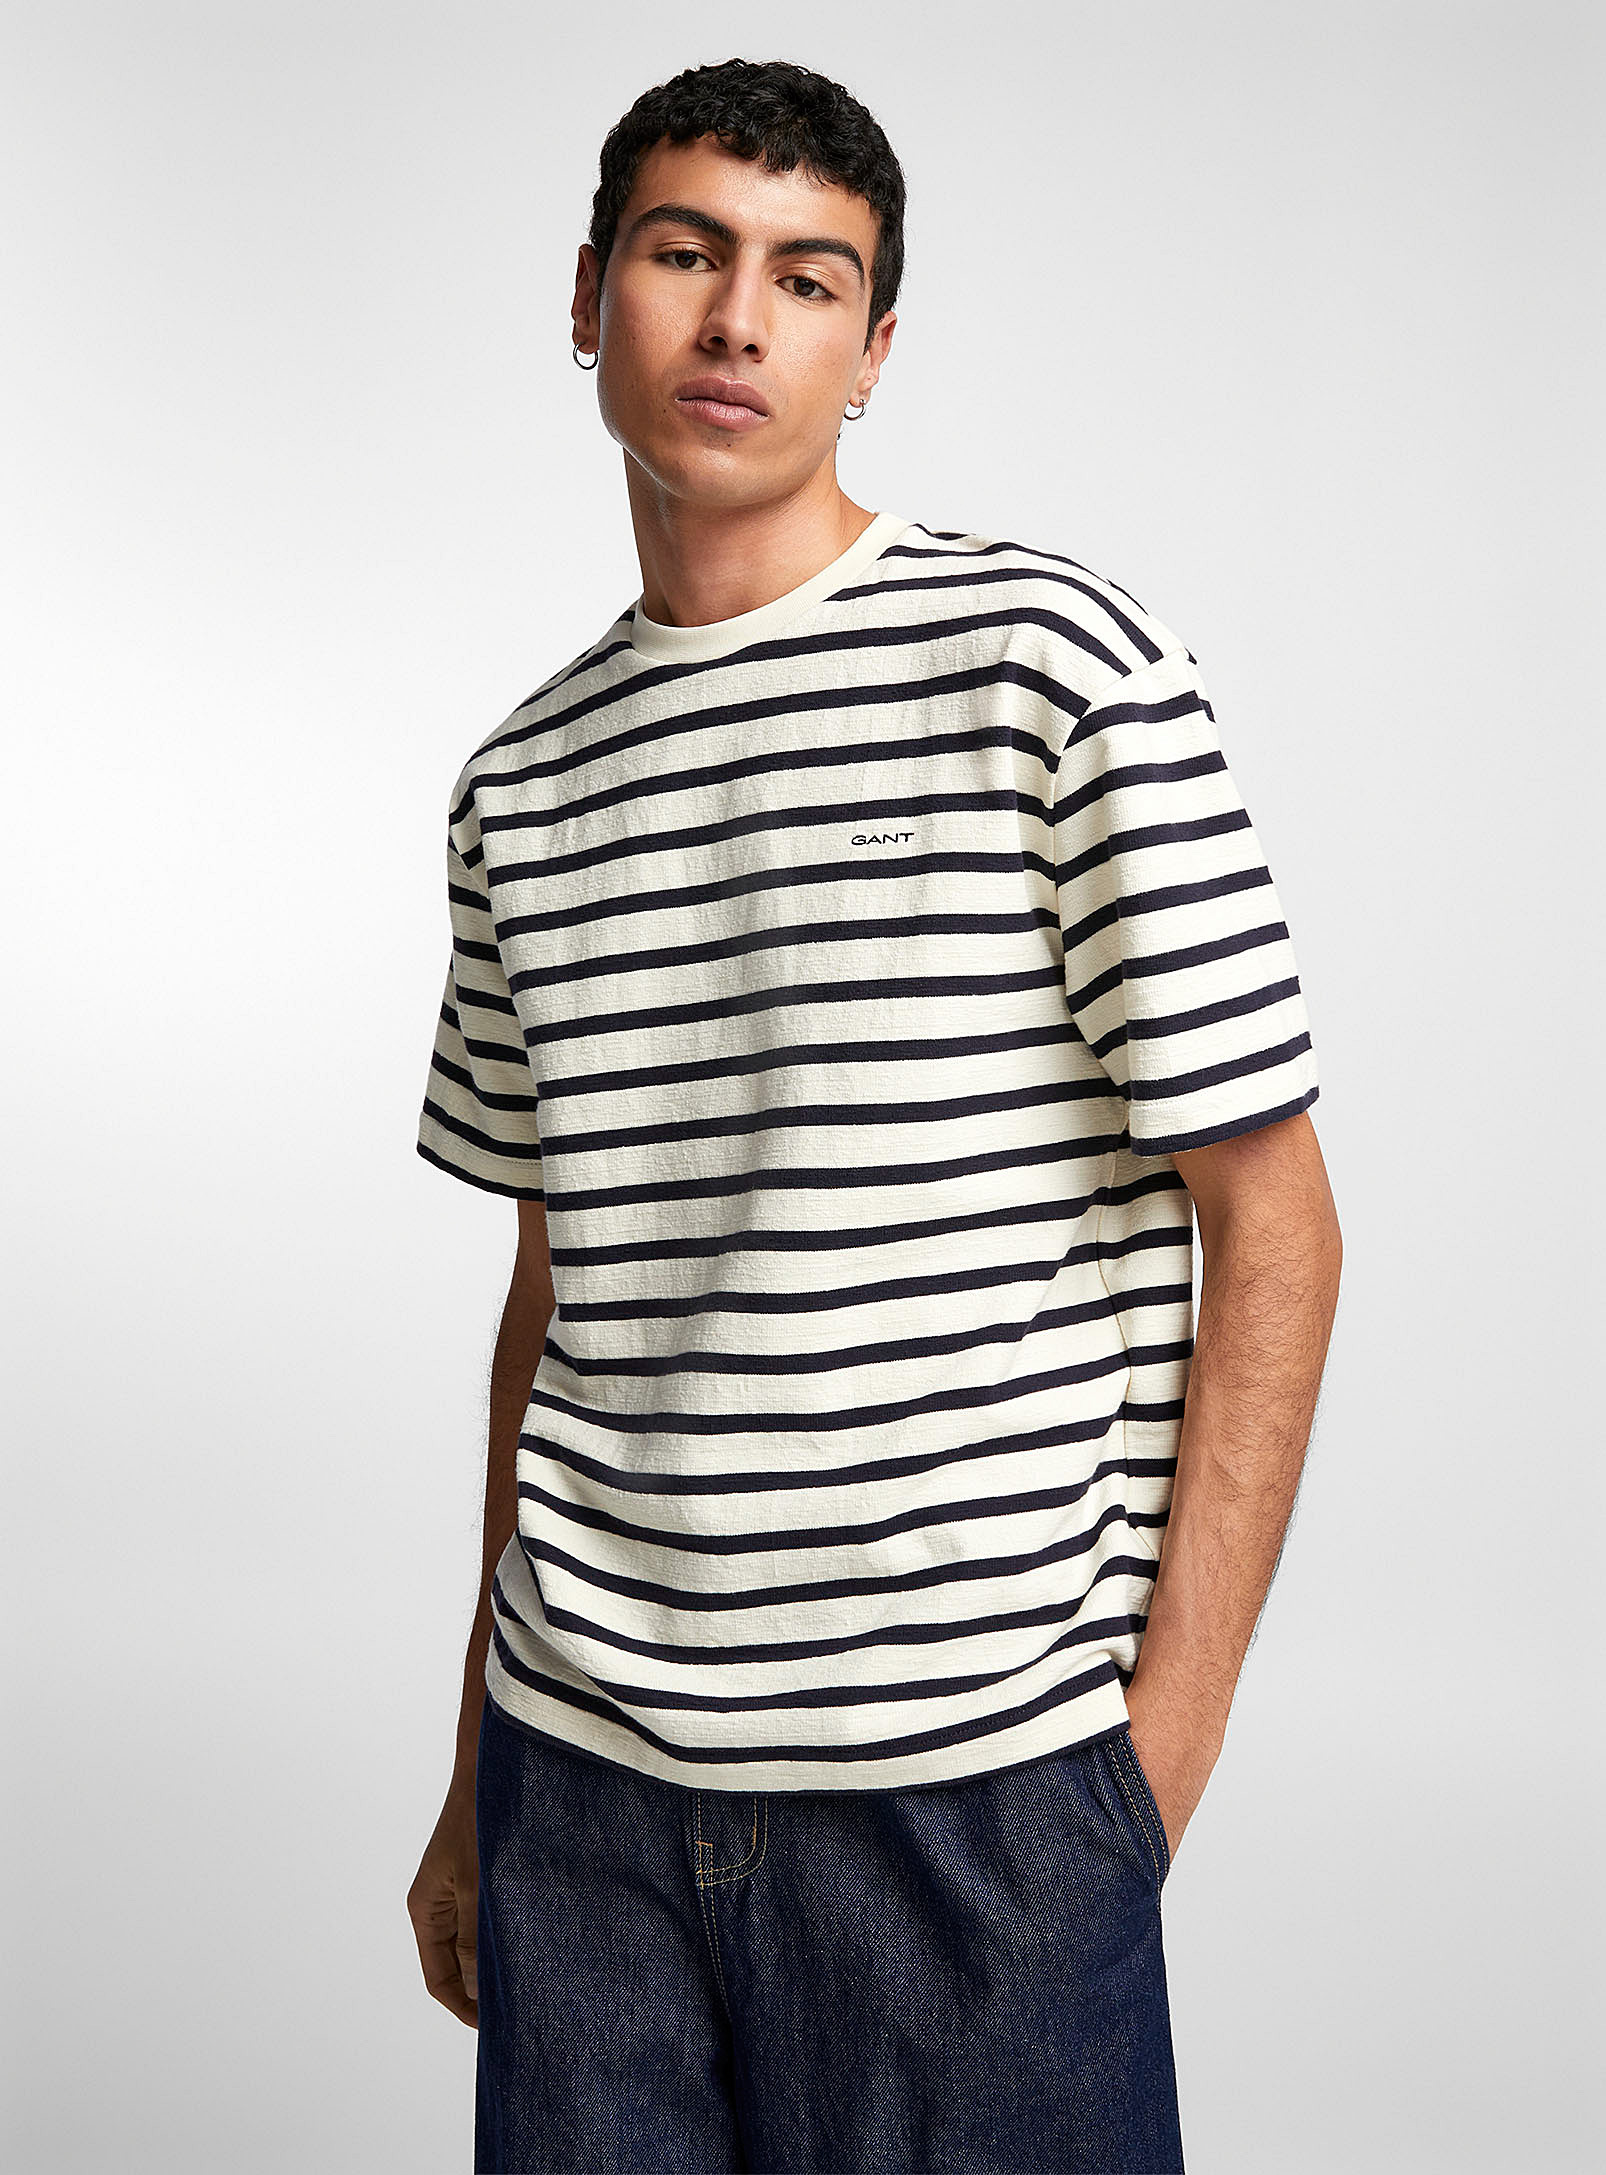 GANT - Le t-shirt rayures nautiques tricot texturé